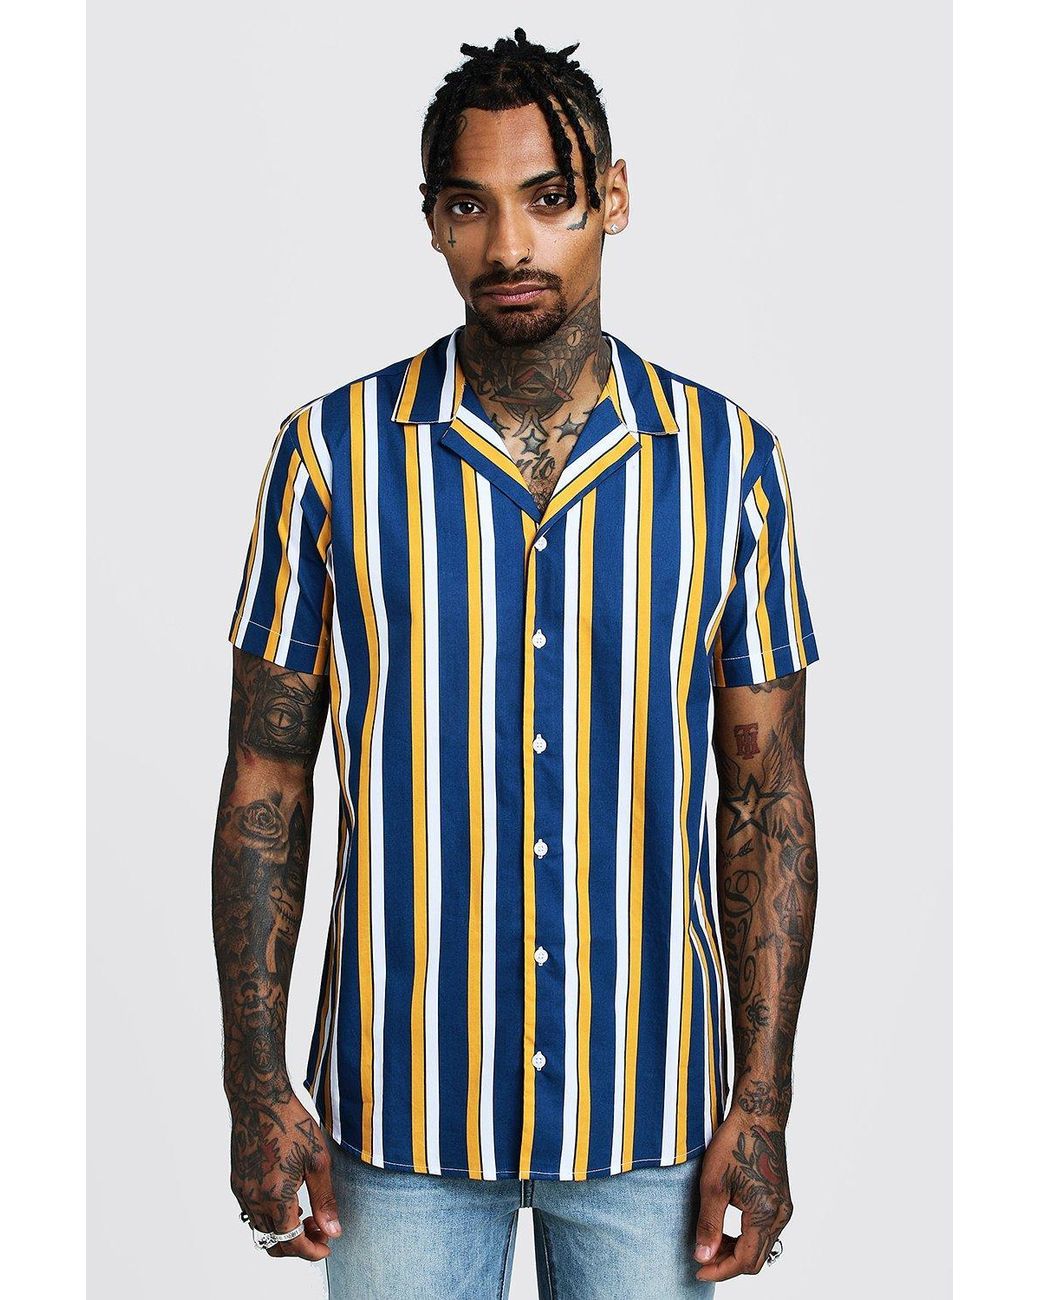 BoohooMAN Vertical Stripe Short Sleeve Revere Shirt in Blue for Men - Lyst